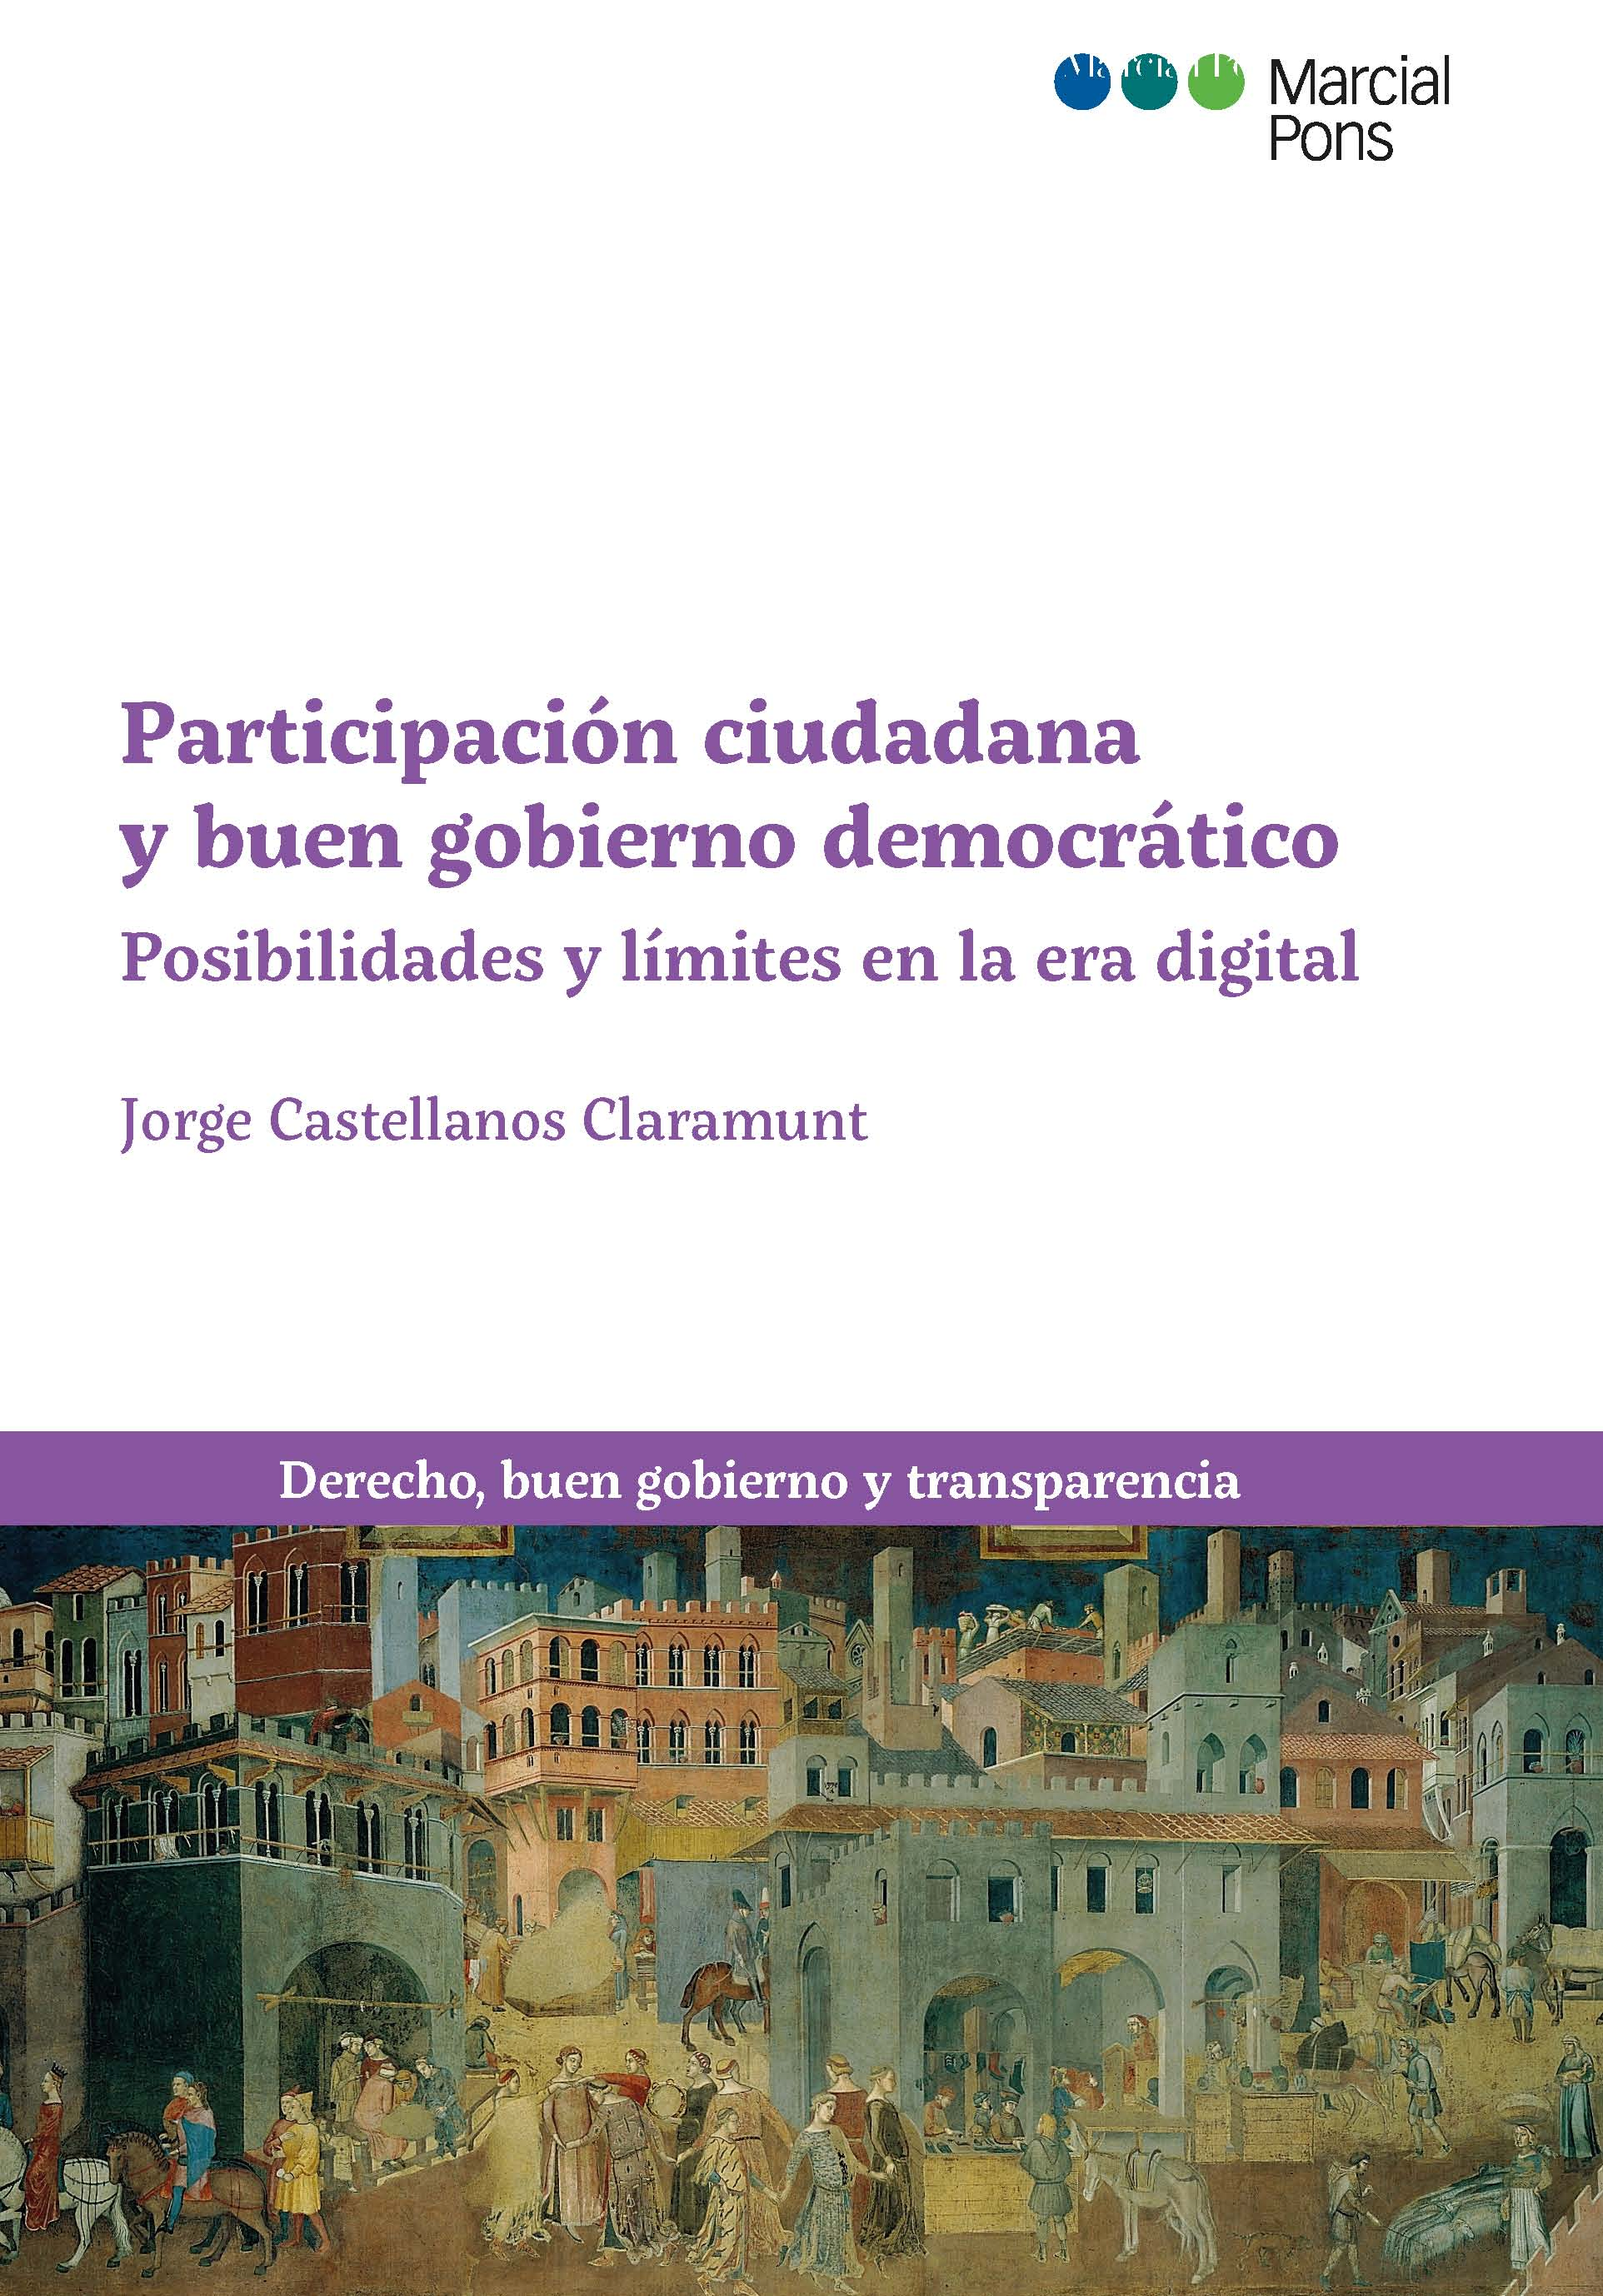 Presentación del libro "Participación ciudadana y buen gobierno democrático' de  Jorge Castellanos Claramunt. 487